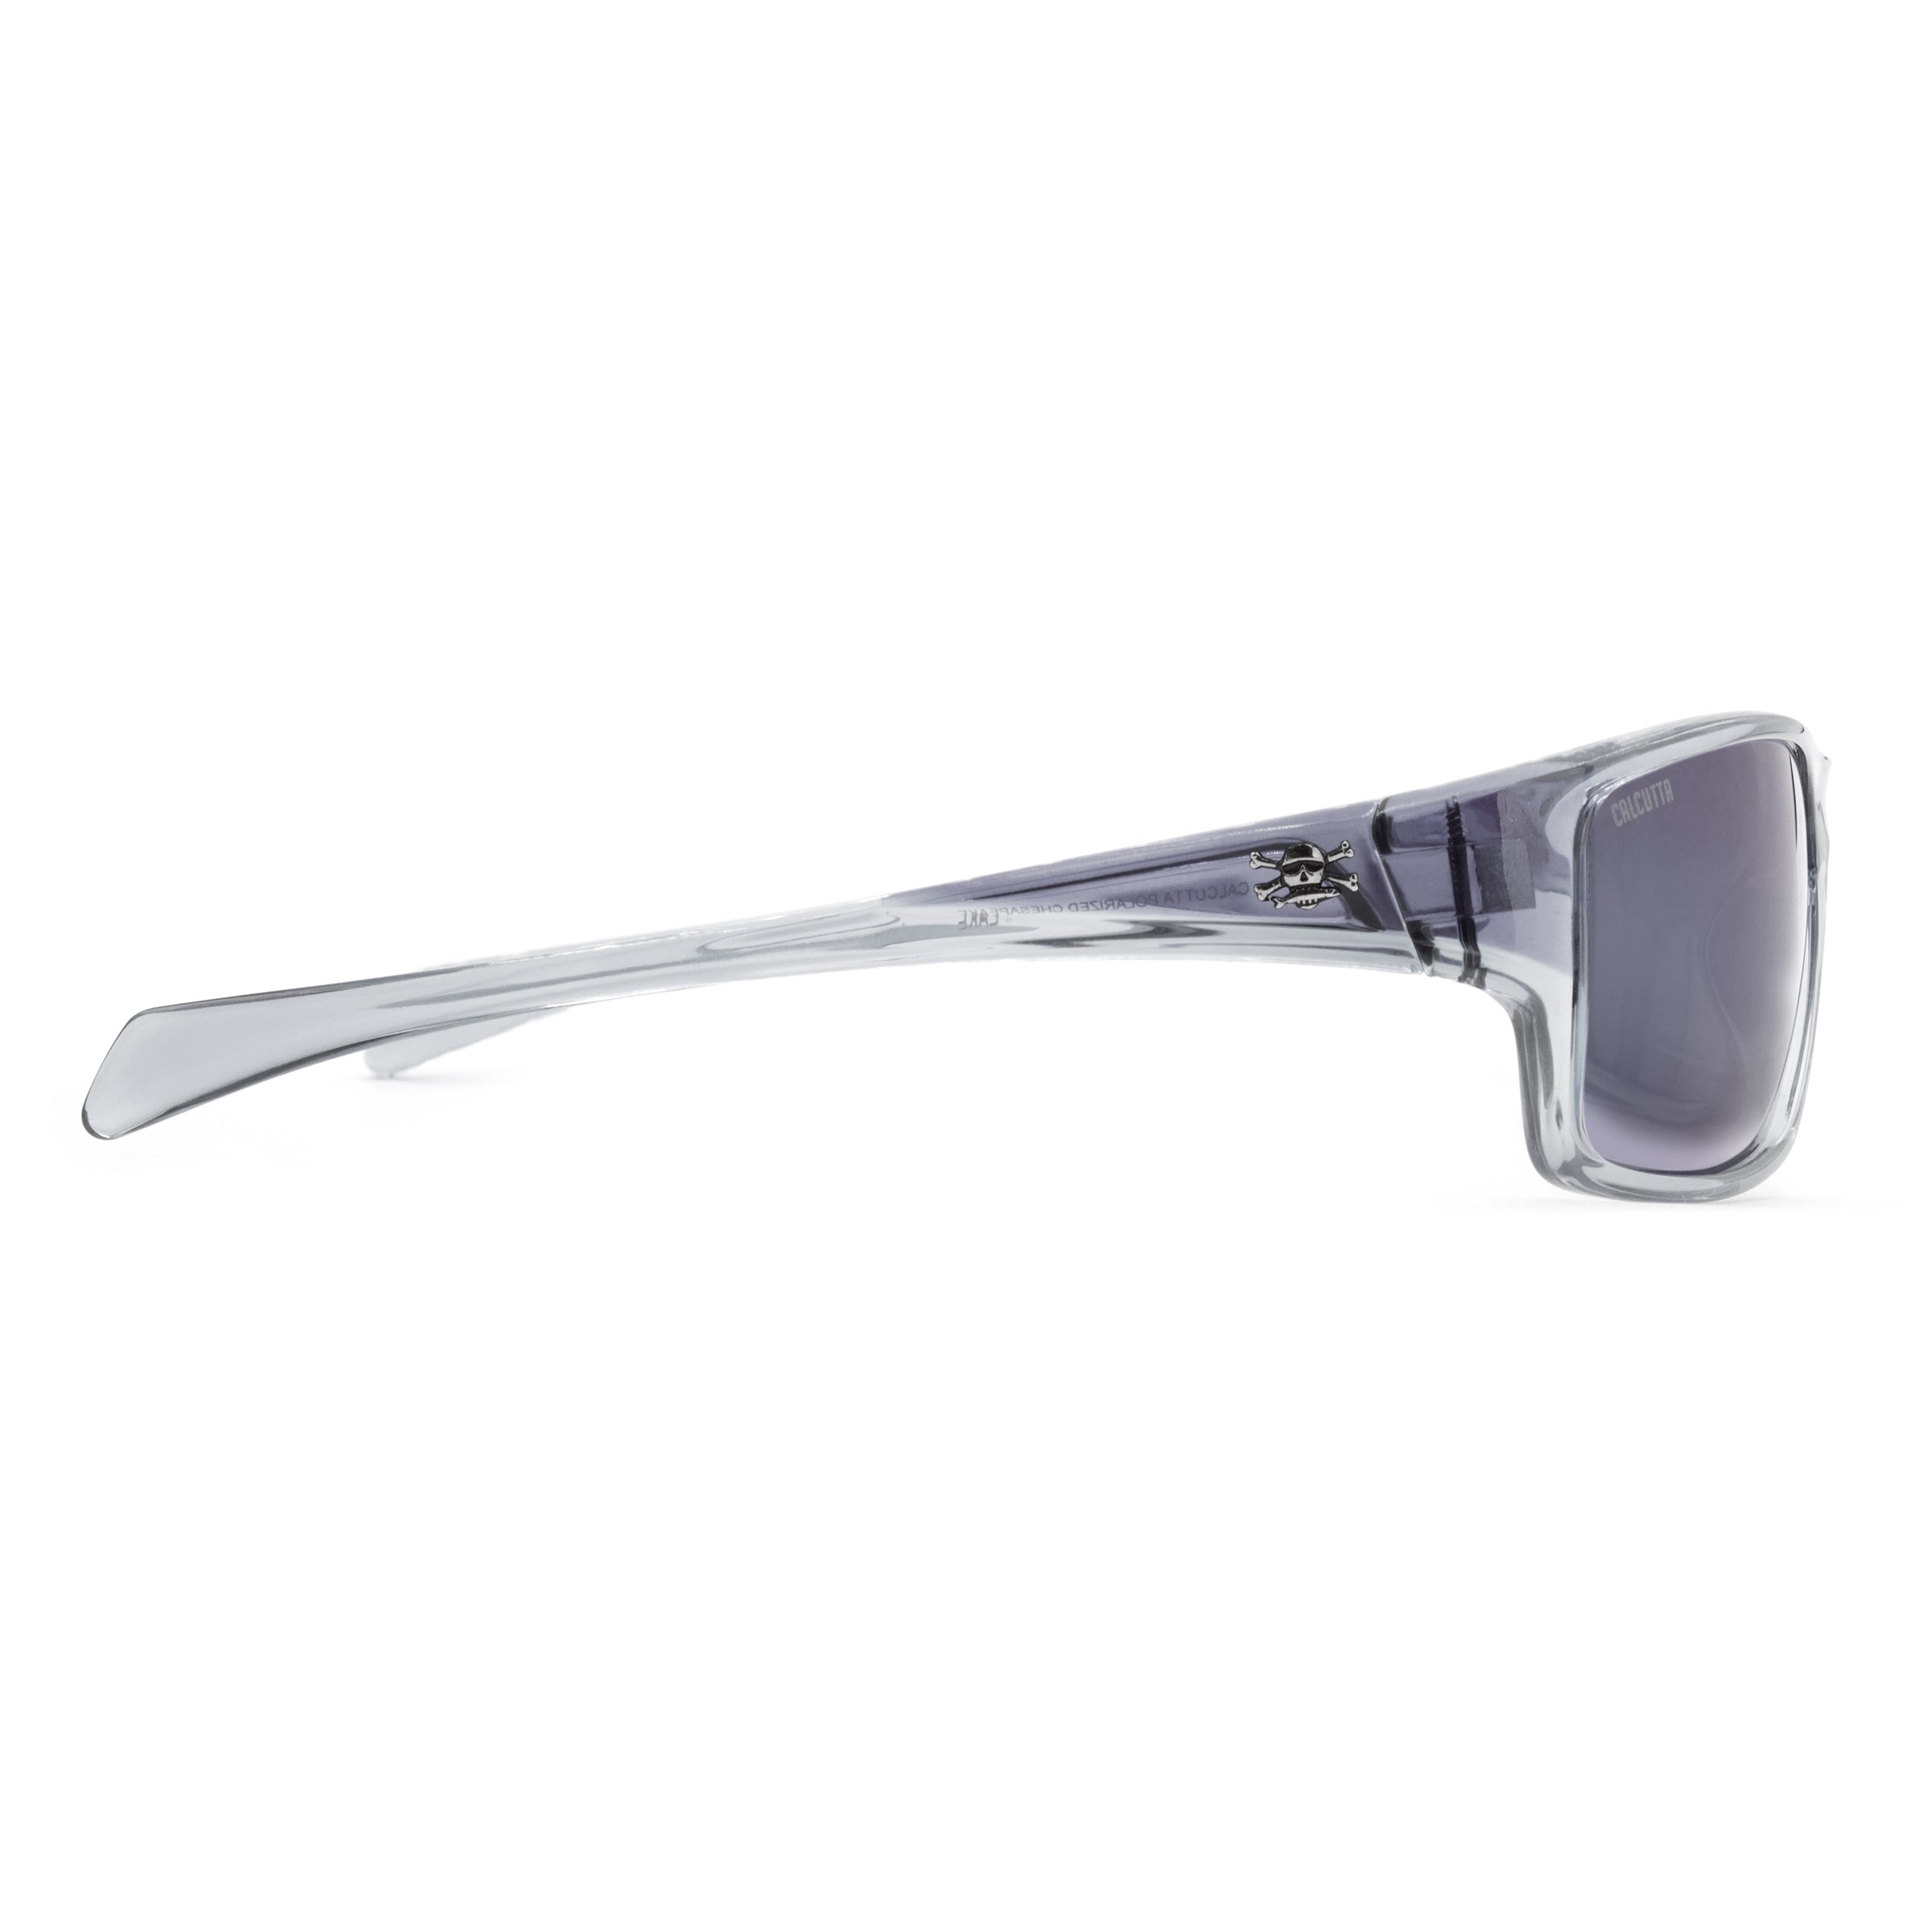 Calcutta Chesapeake sunglasses silver mirror side